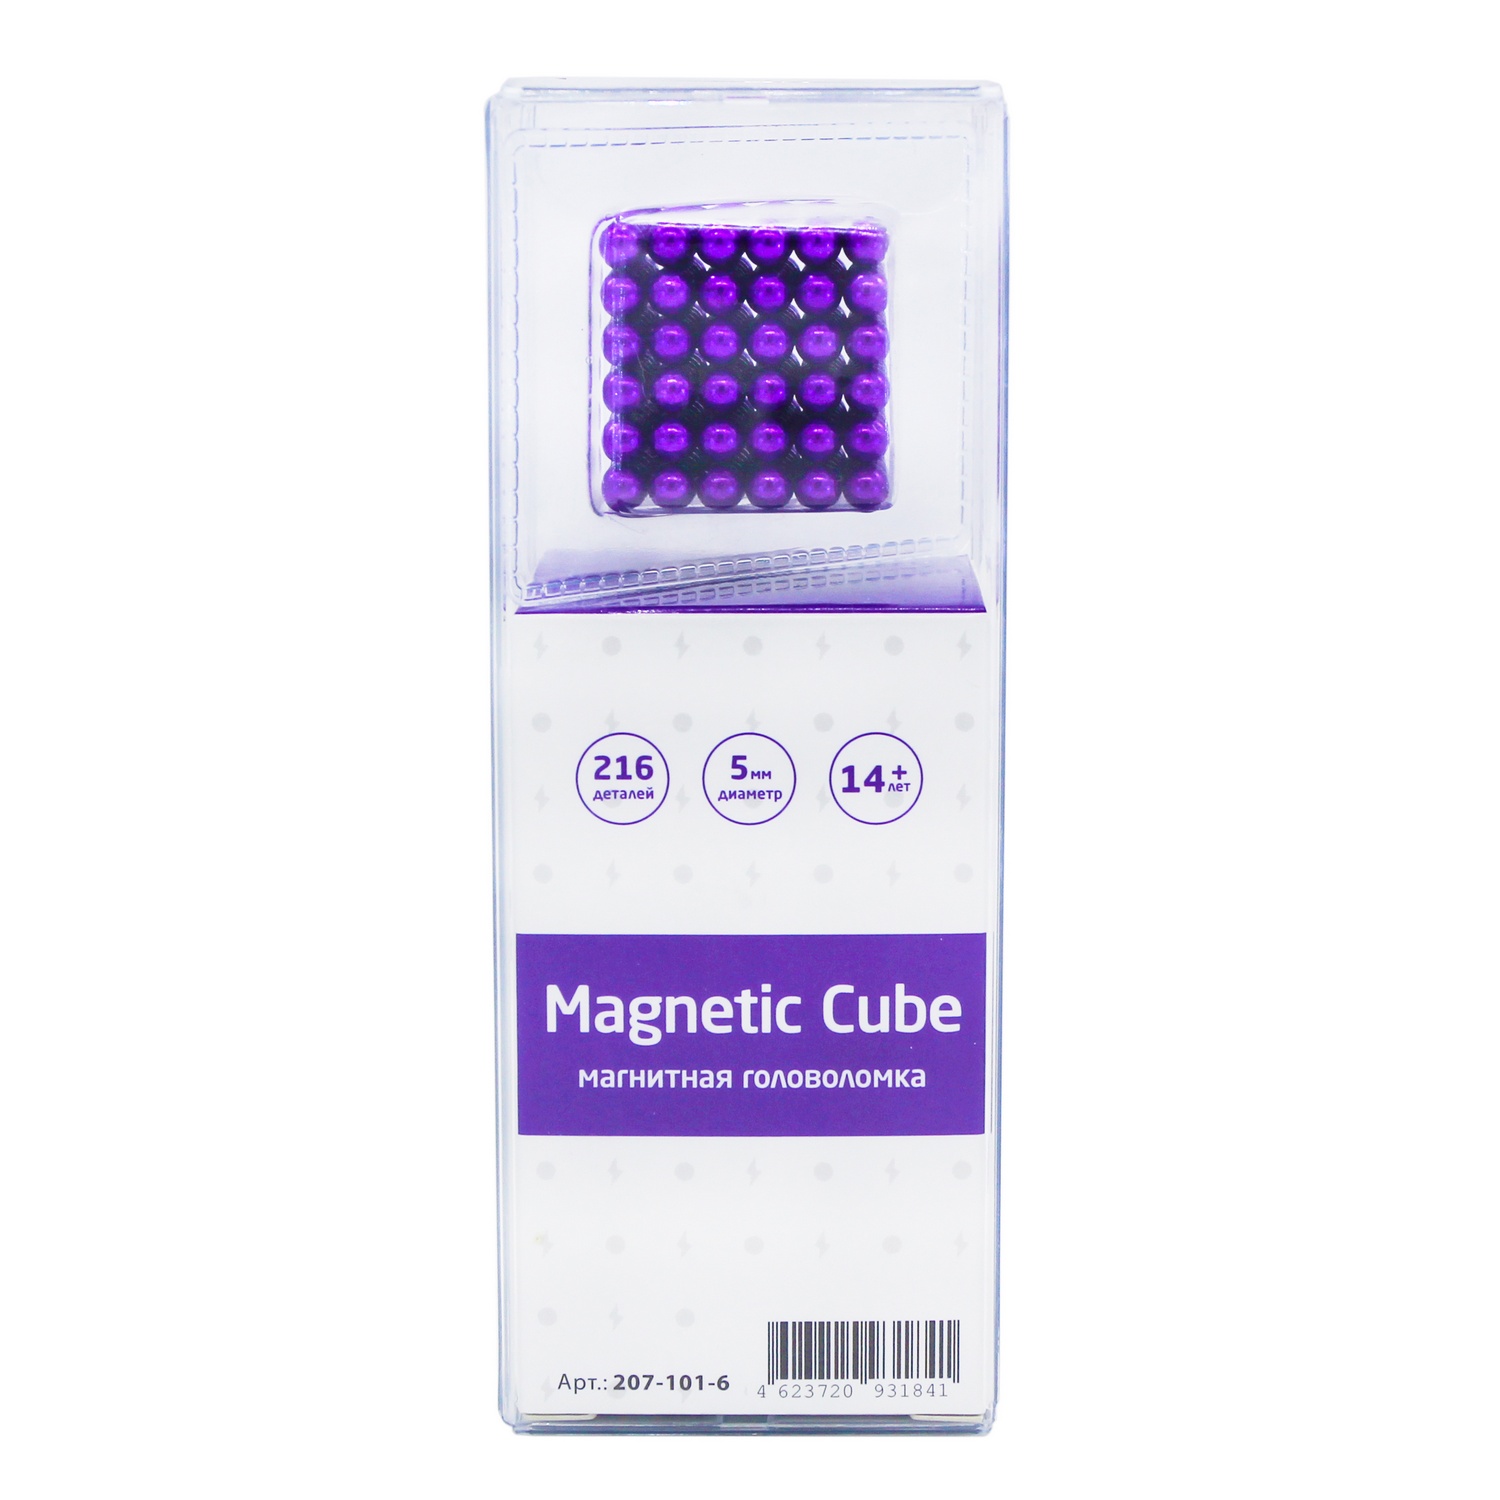 Головоломка магнитная Magnetic Cube сиреневый неокуб 216 элементов - фото 3